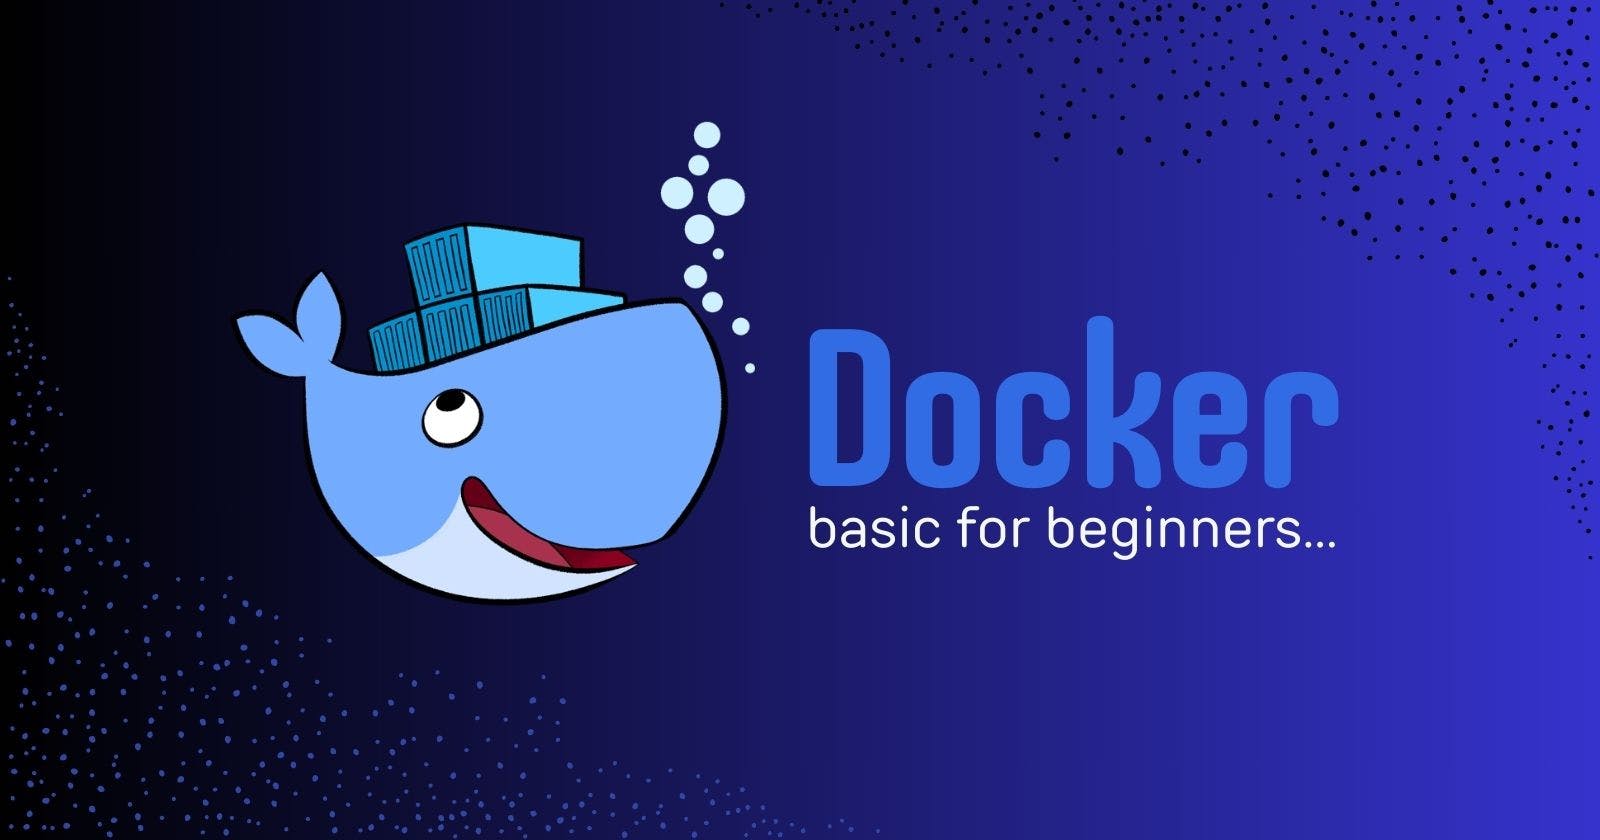 Docker basics for beginners...